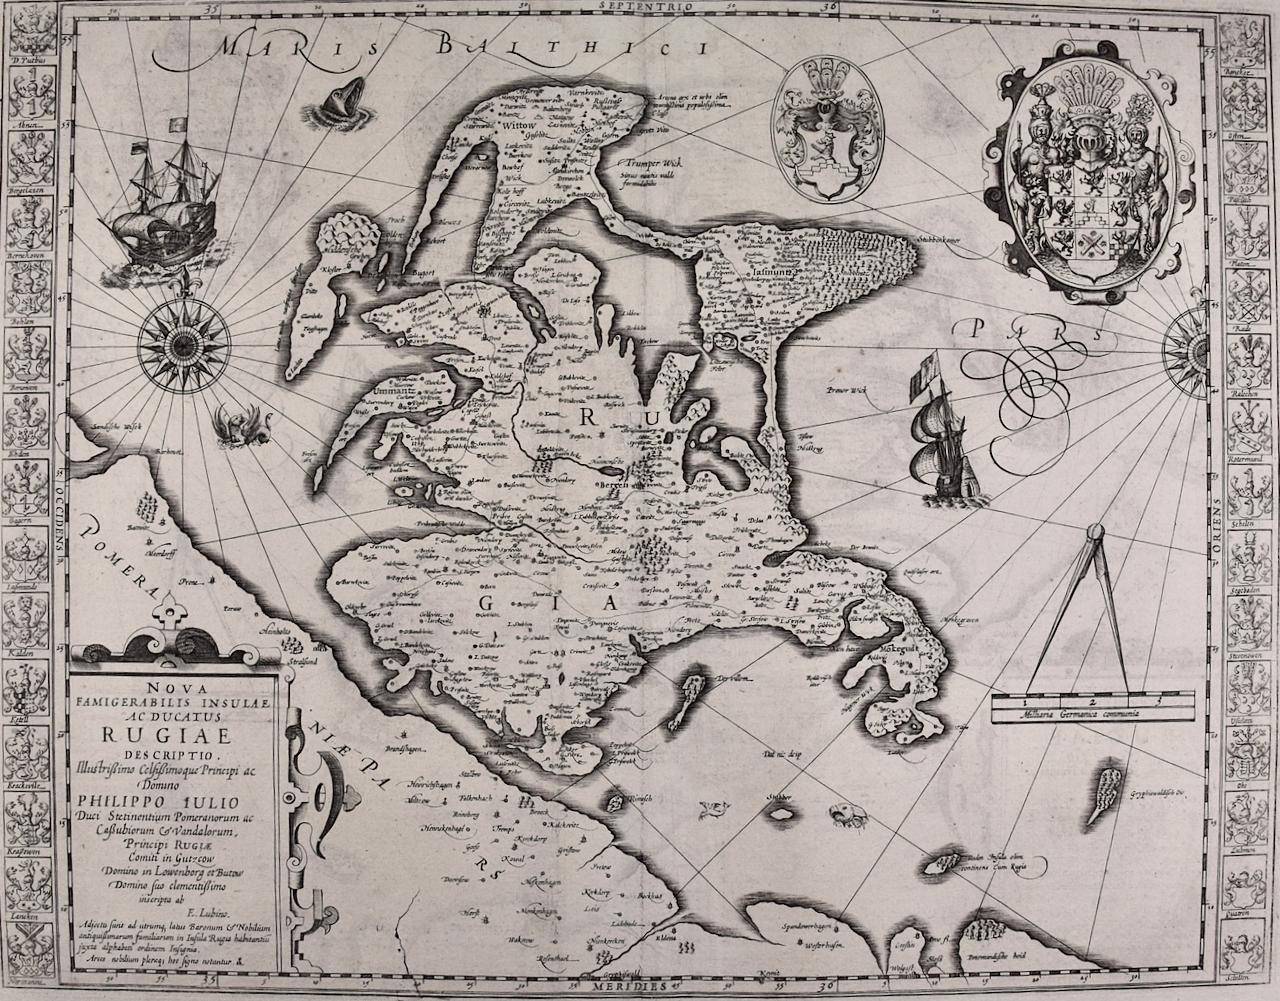 Île Rugen, Allemagne : une carte du début du XVIIe siècle par Mercator et Hondius - Print de Gerard Mercator